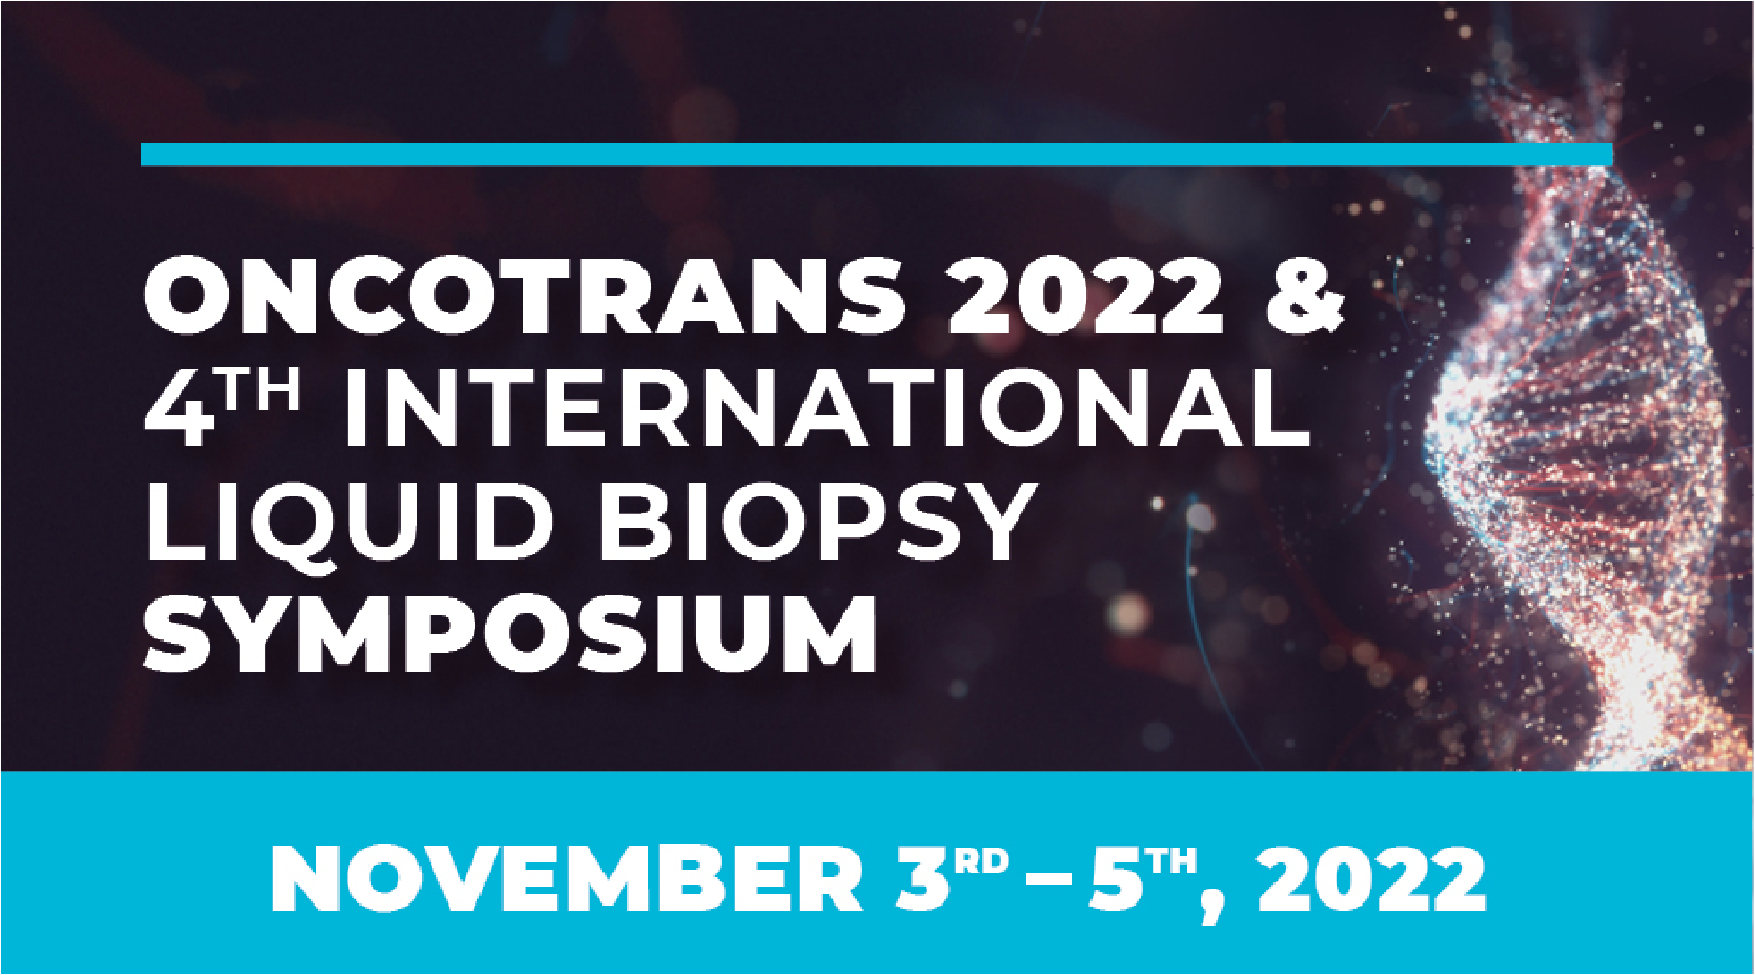 ONCOTRANS 2022 & 4th international liquid biopsy symposium